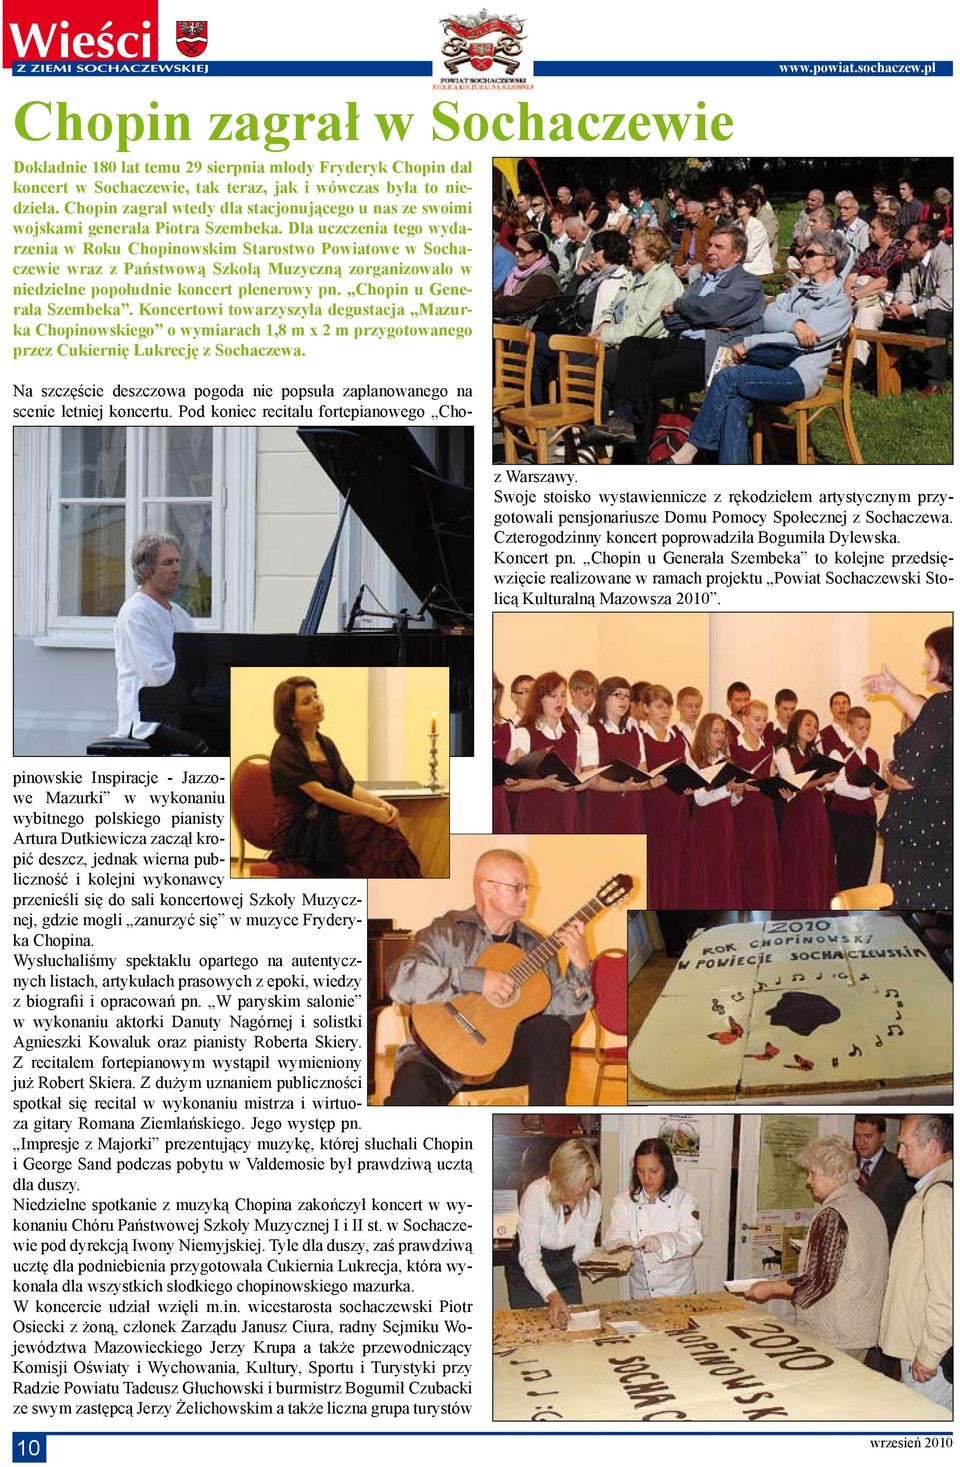 Dla uczczenia tego wydarzenia w Roku Chopinowskim Starostwo Powiatowe w Sochaczewie wraz z Państwową Szkołą Muzyczną zorganizowało w niedzielne popołudnie koncert plenerowy pn.